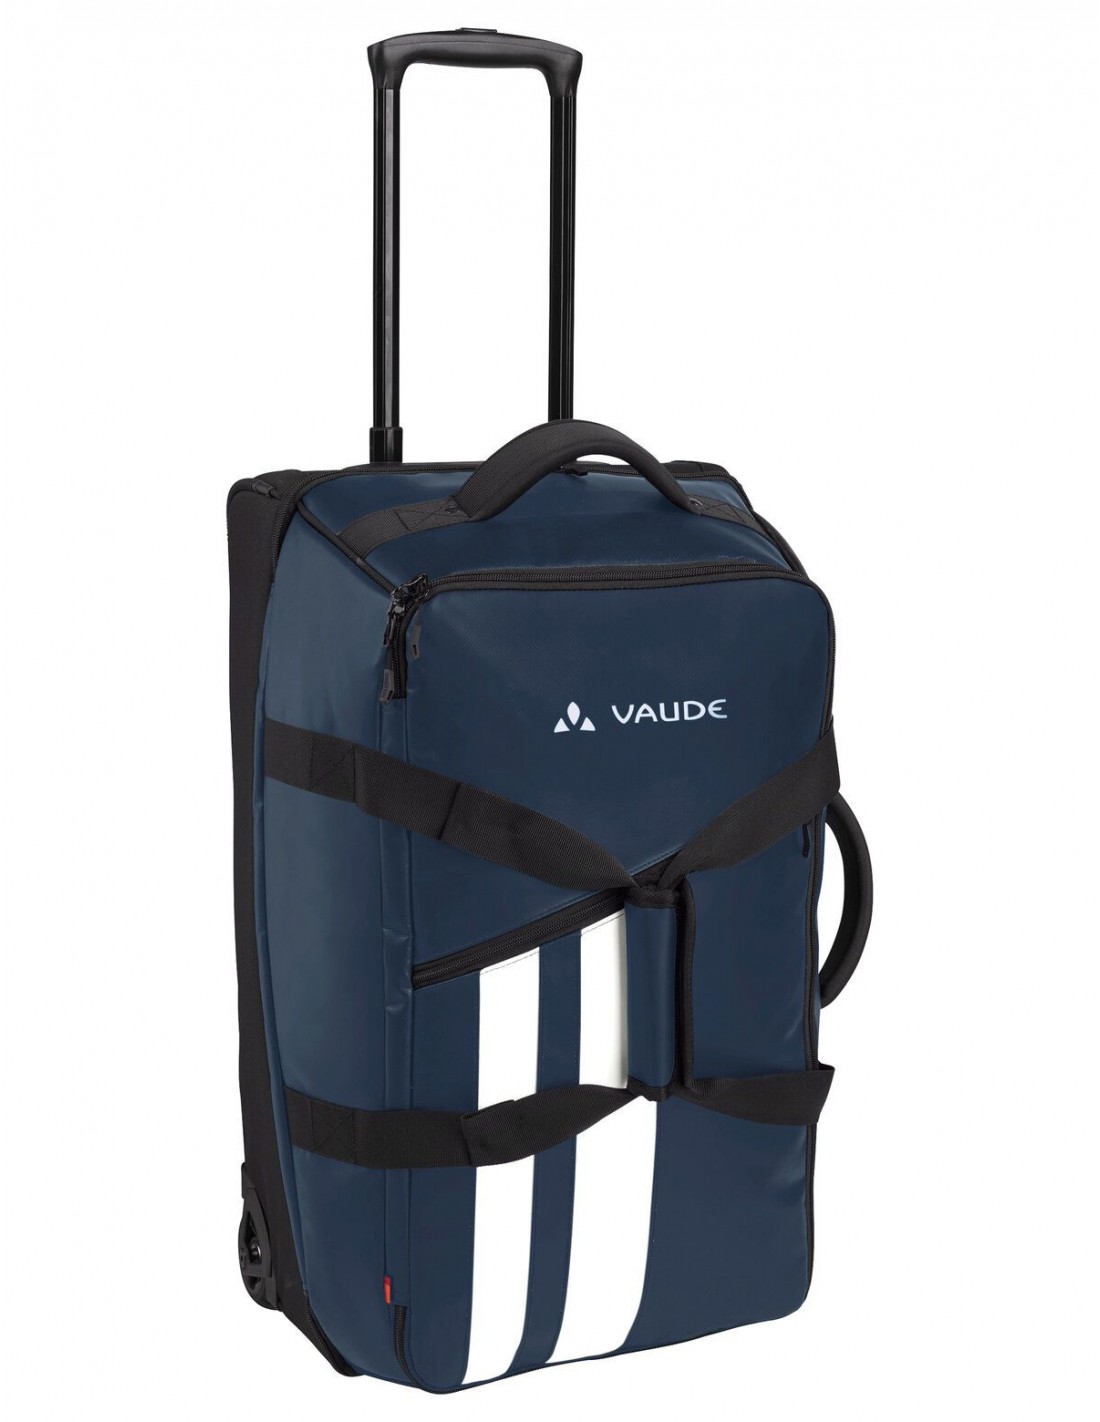 Vaude Reisetasche Rotuma 65 Liter, Trolley, marine (dunkelblau), Tragegriff, mit Rollen, PVC-frei, für Reisende und Wanderer von Vaude